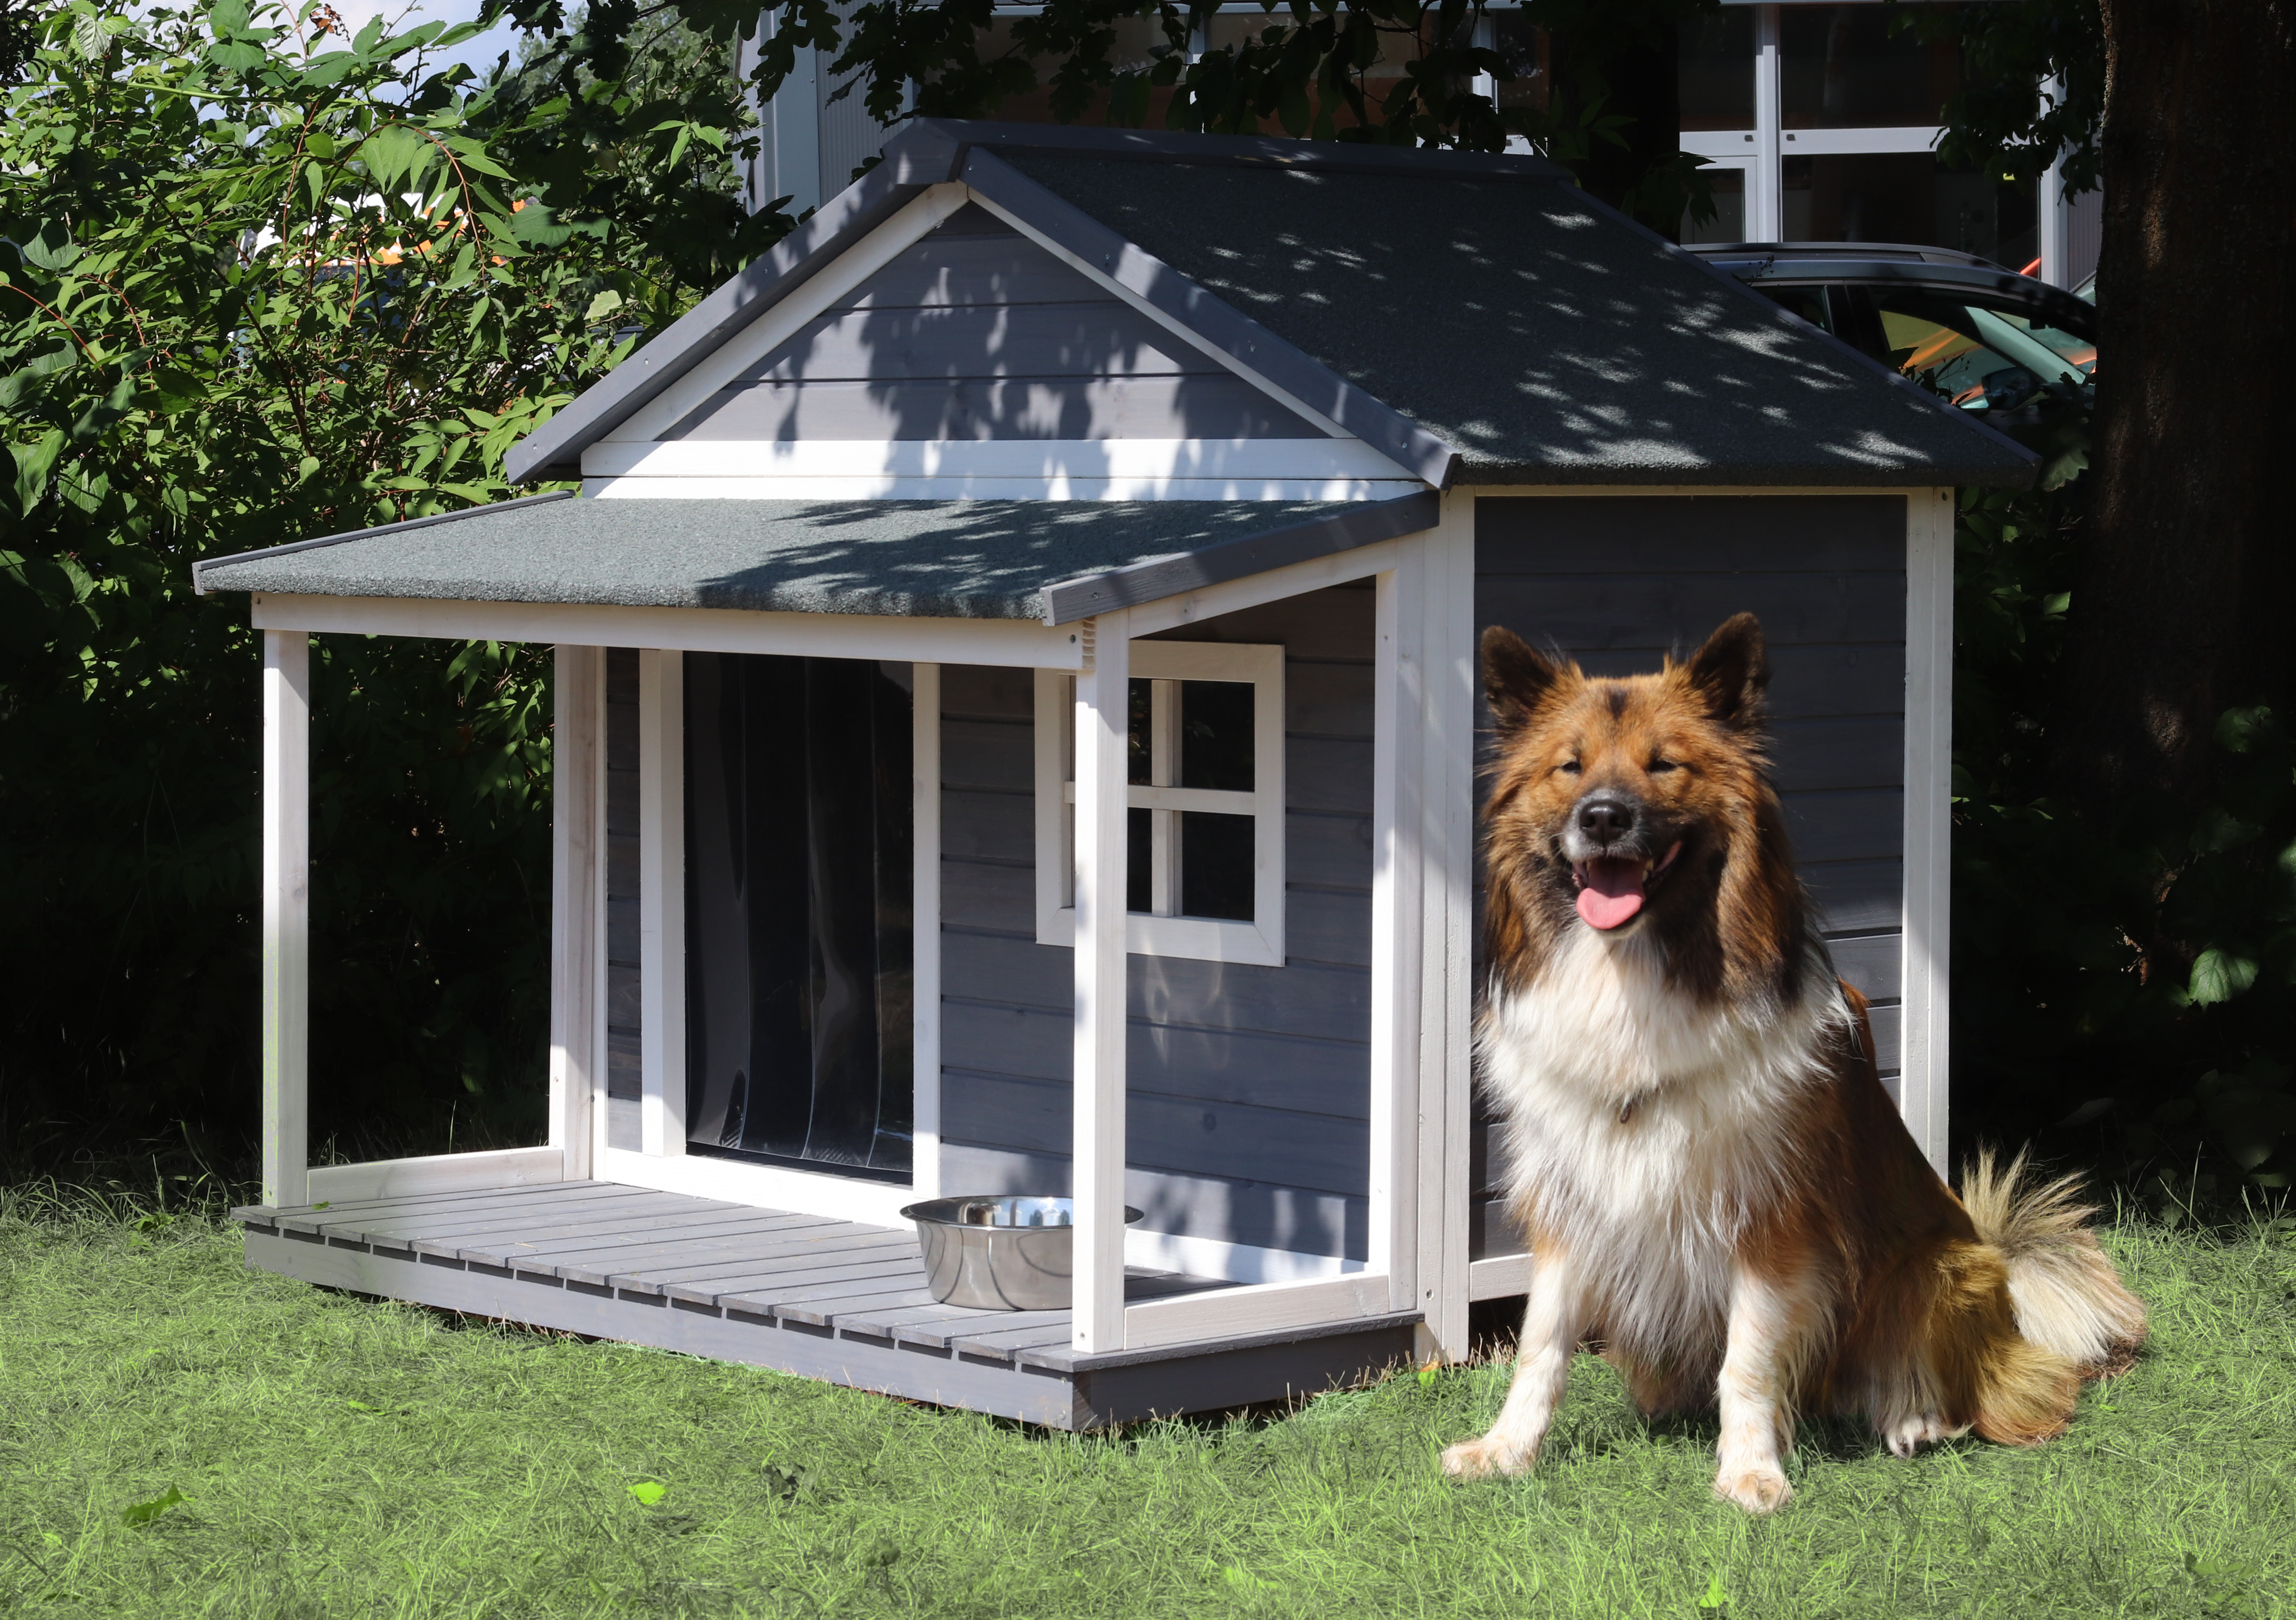 Holz-Hundehütte mit Satteldach und Veranda, grau-weiß lasiert, wetterfest